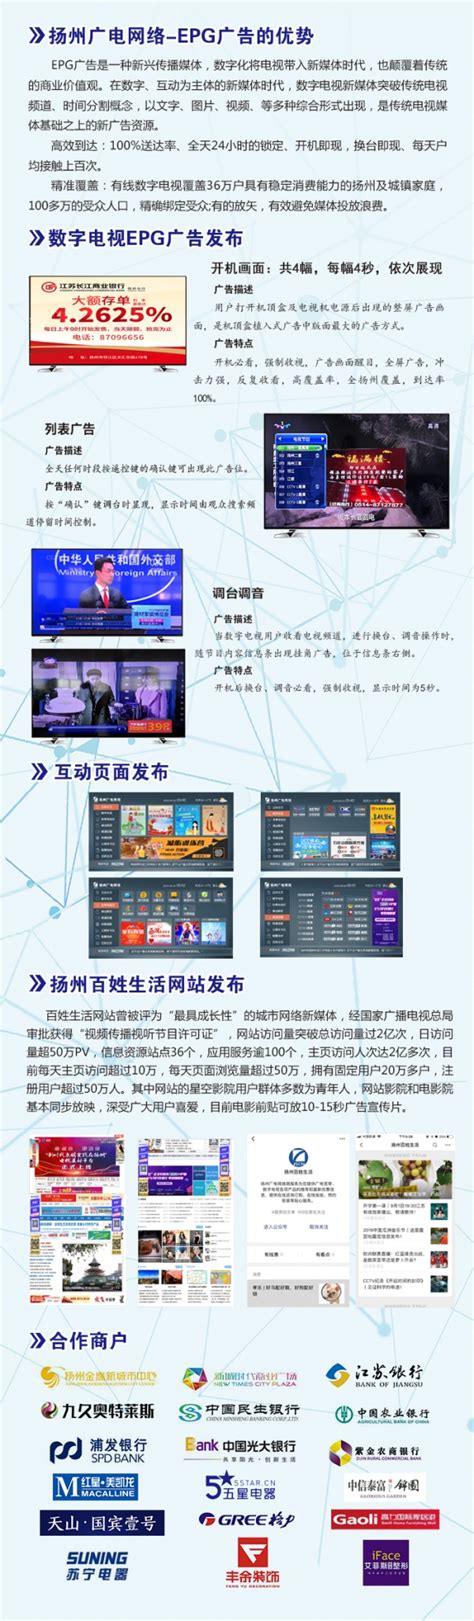 江苏有线扬州分公司 信息平台